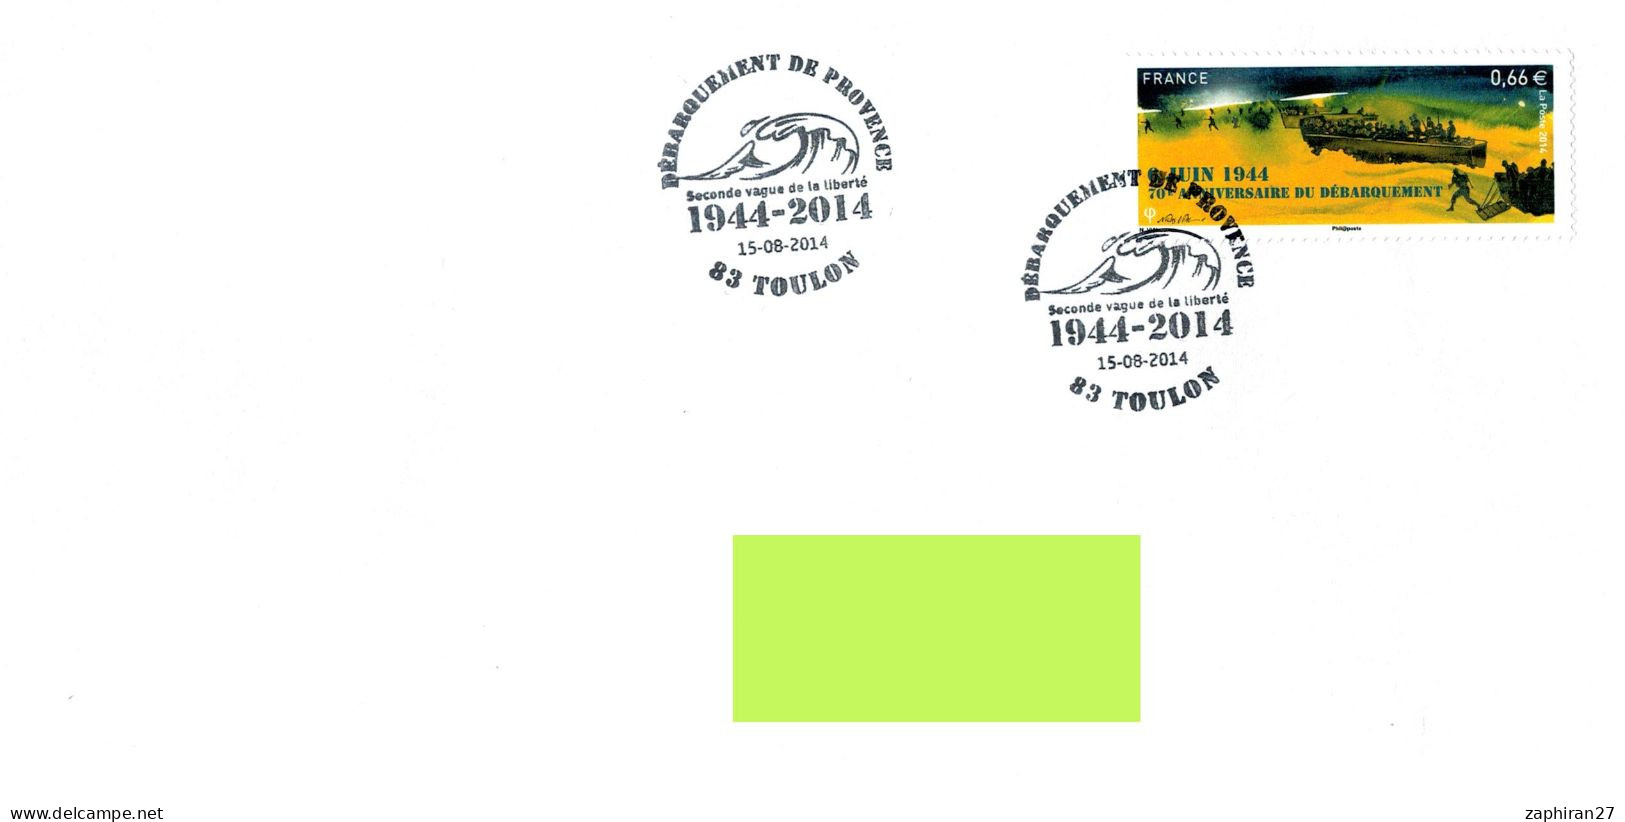 83 -  TOULON (VAR) DEBARQUEMENT EN PROVENCE 1944-2014 SECONDE VAGUE DE LA LIBERTE 15-8-2014 #1005# - WO2